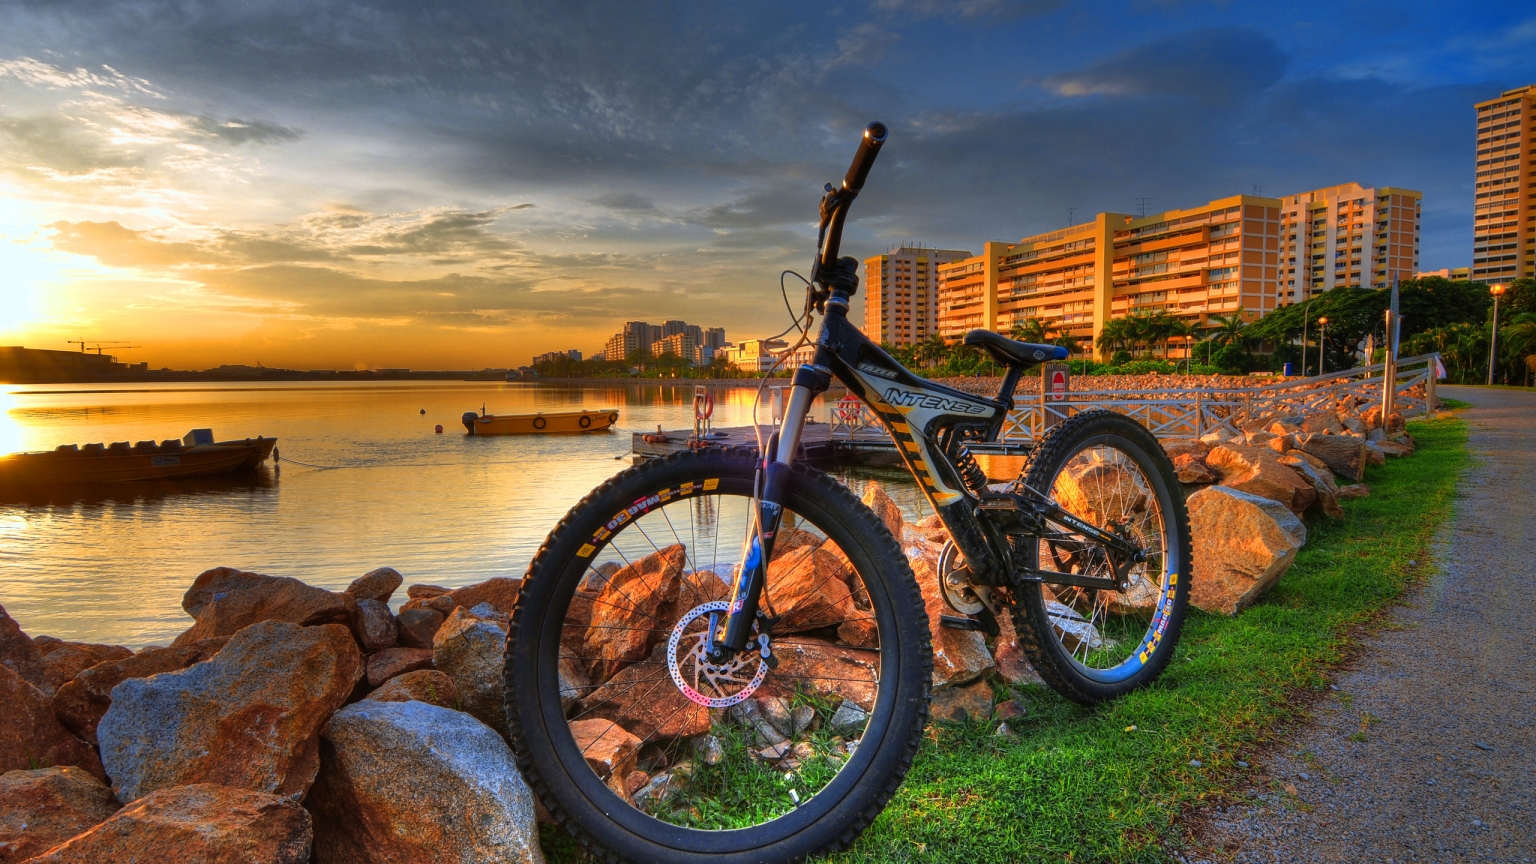 HDR City Bike for 1536 x 864 HDTV resolution